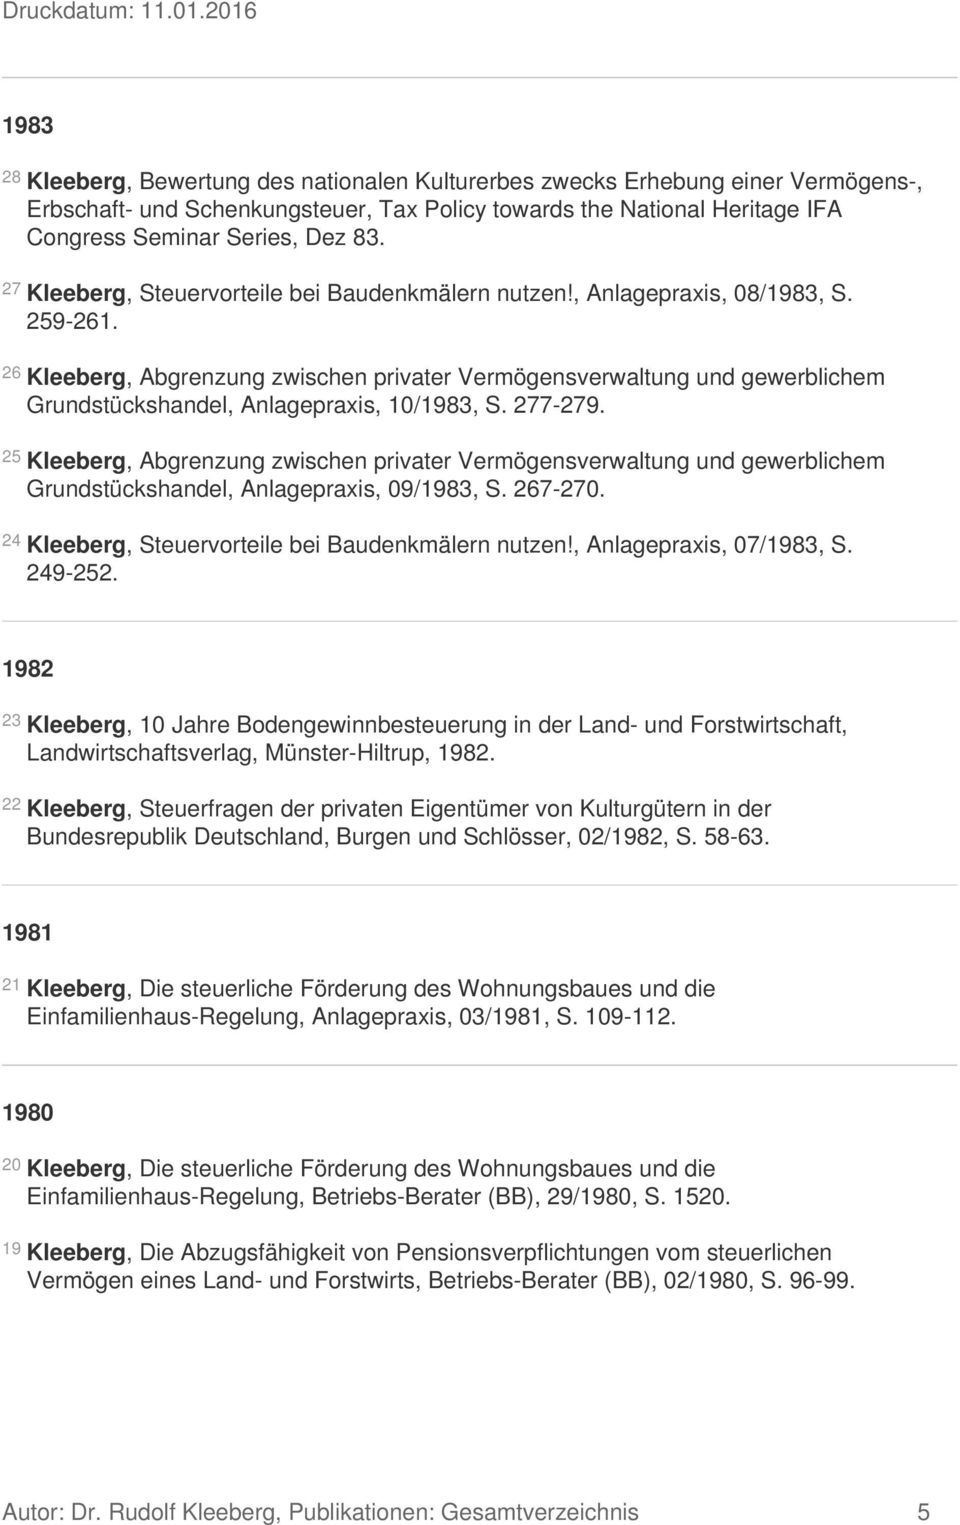 26 Kleeberg, Abgrenzung zwischen privater Vermögensverwaltung und gewerblichem Grundstückshandel, Anlagepraxis, 10/1983, S. 277-279.